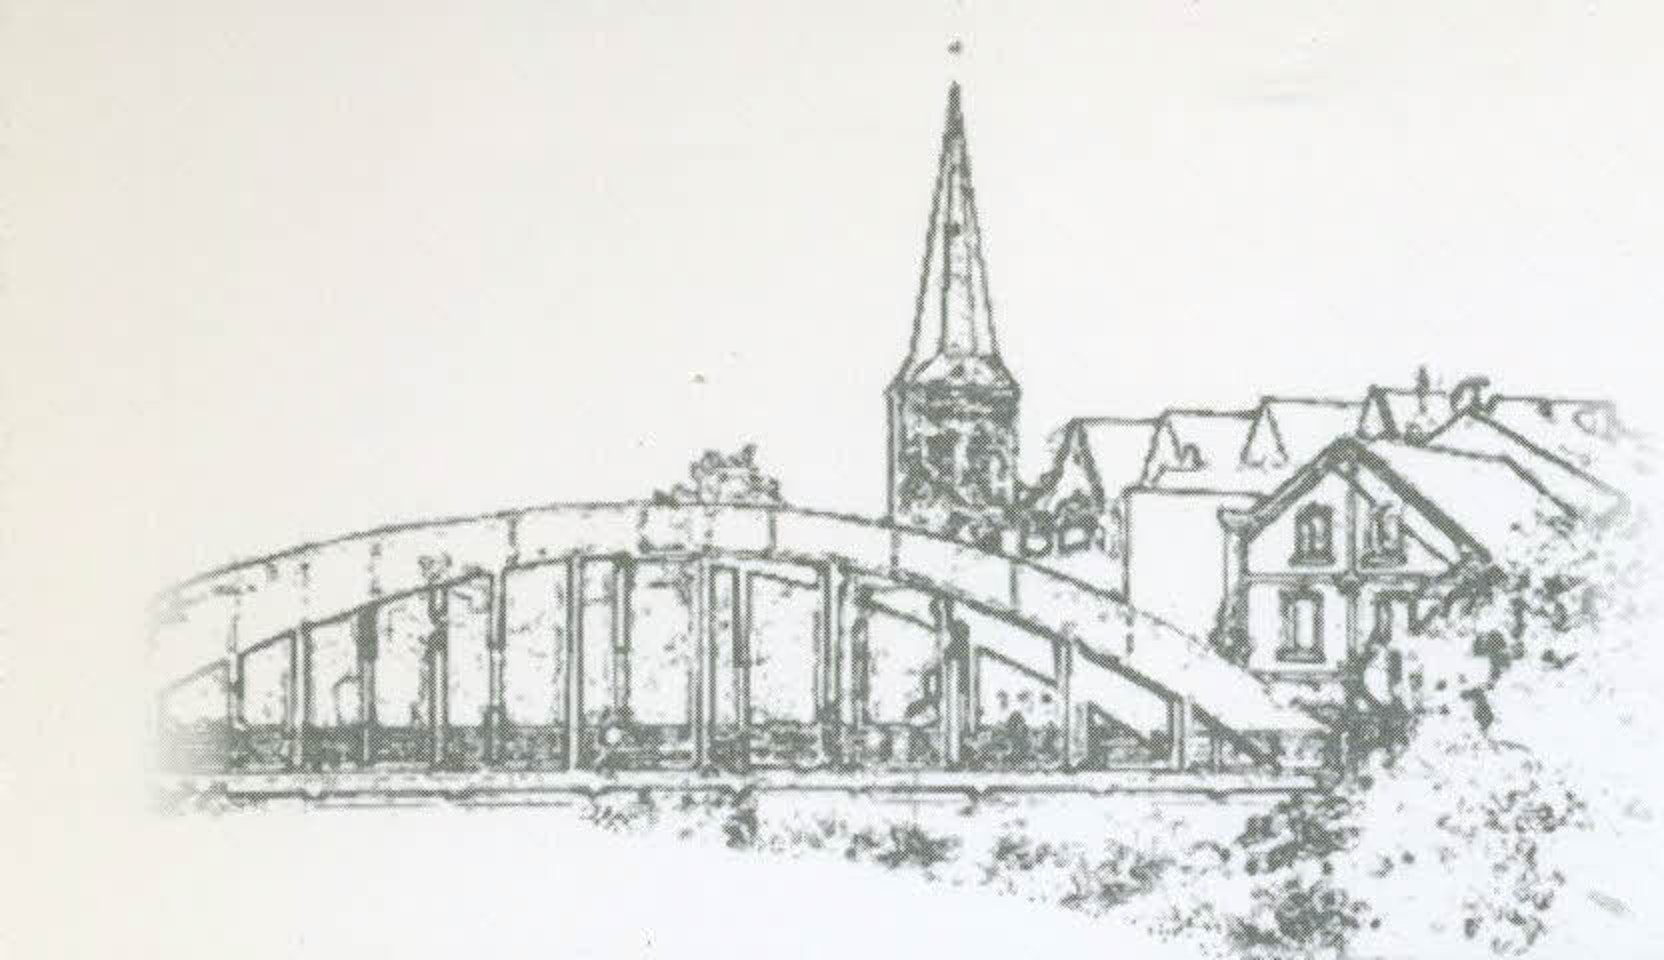 Auf der Bürgerbroschüre hat die Stadtverwaltung auch diese Zeichnung der Wupperbrücke als Erkennungszeichen verwendet.